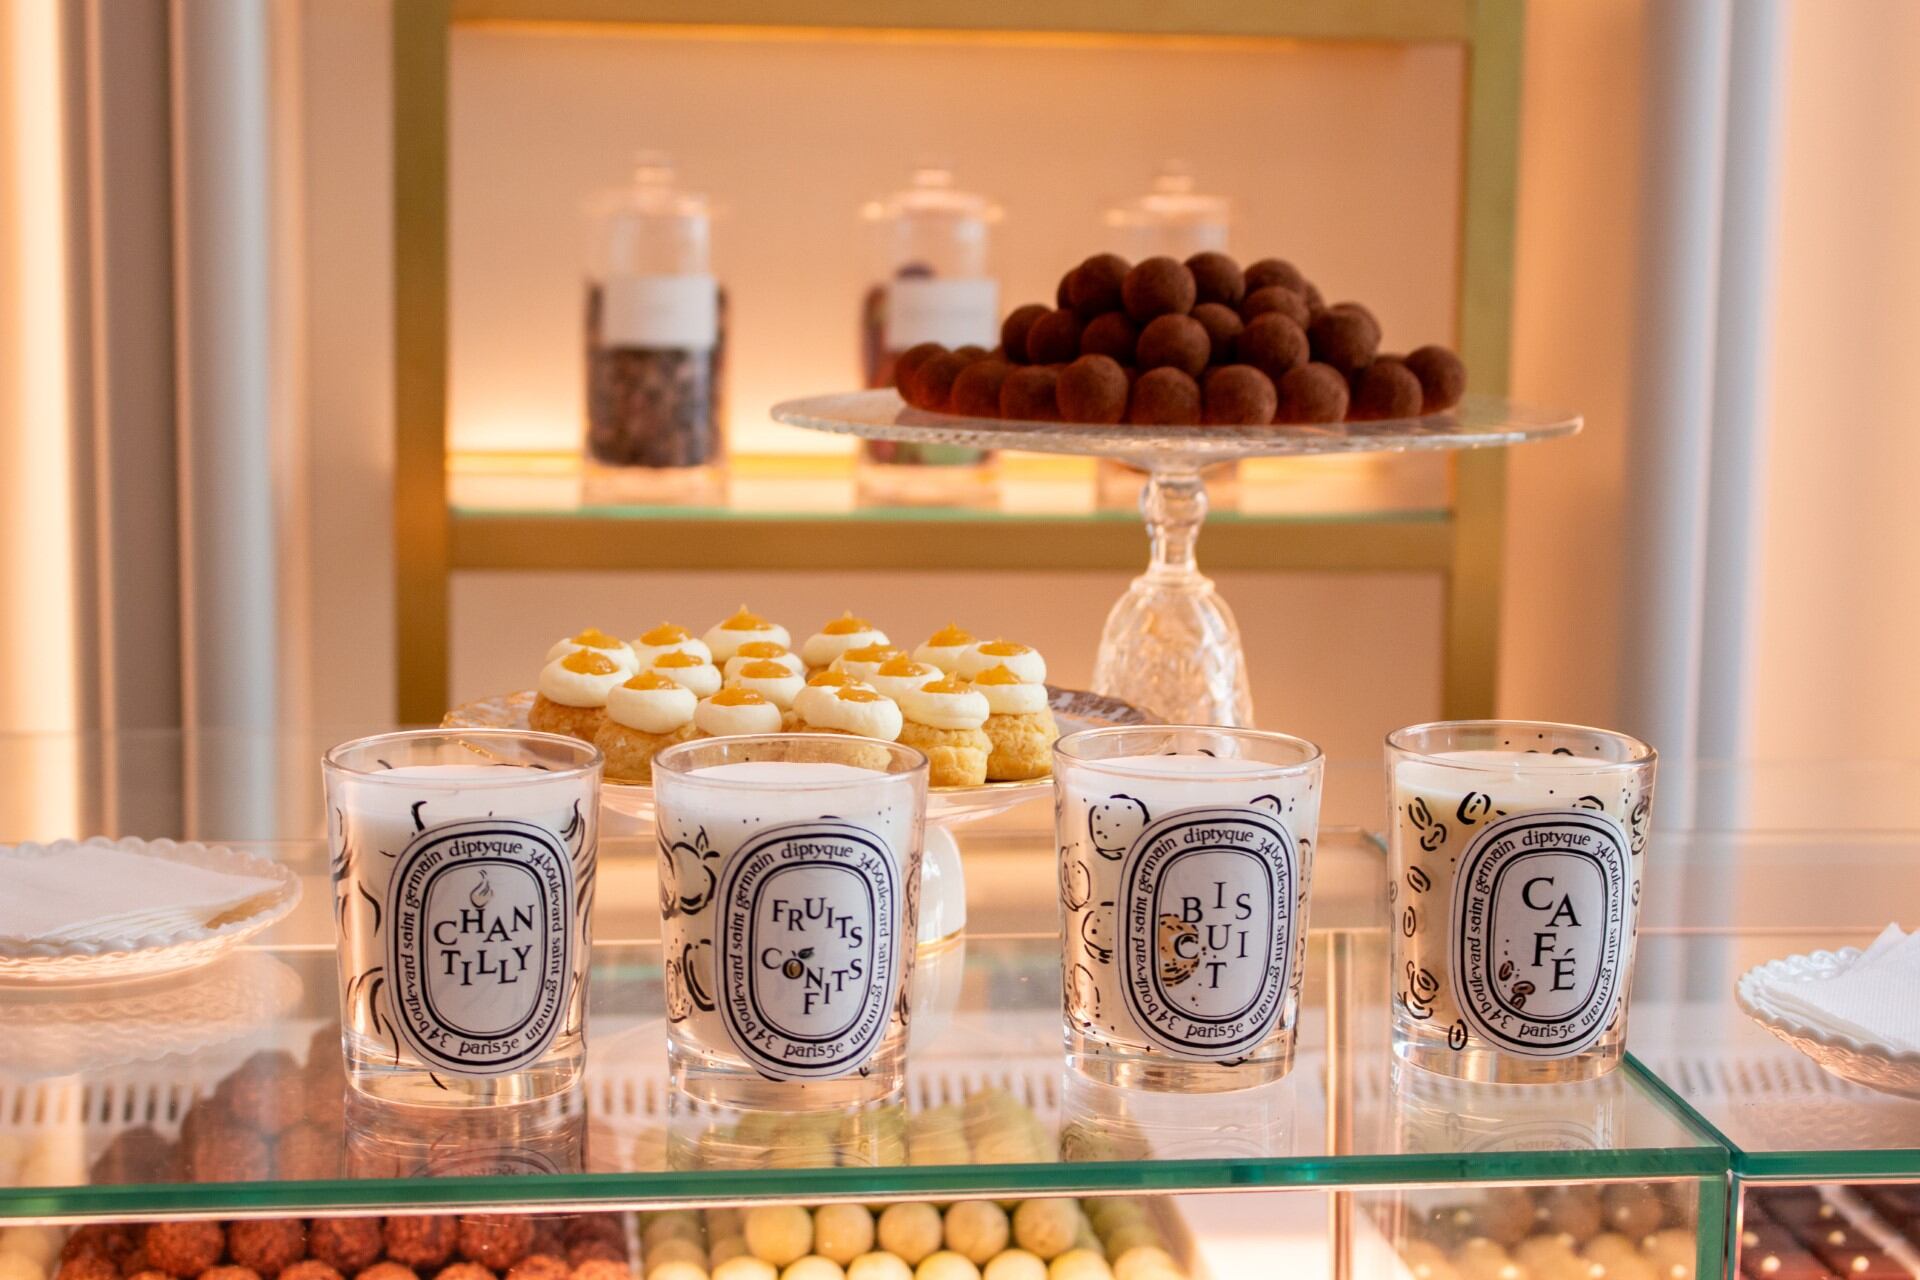 Velas de la nueva colección Diptyque con aromas inspirados en sabores como la galleta, el café o la crema pastelera. Imagen proporcionada por La Duquesita.